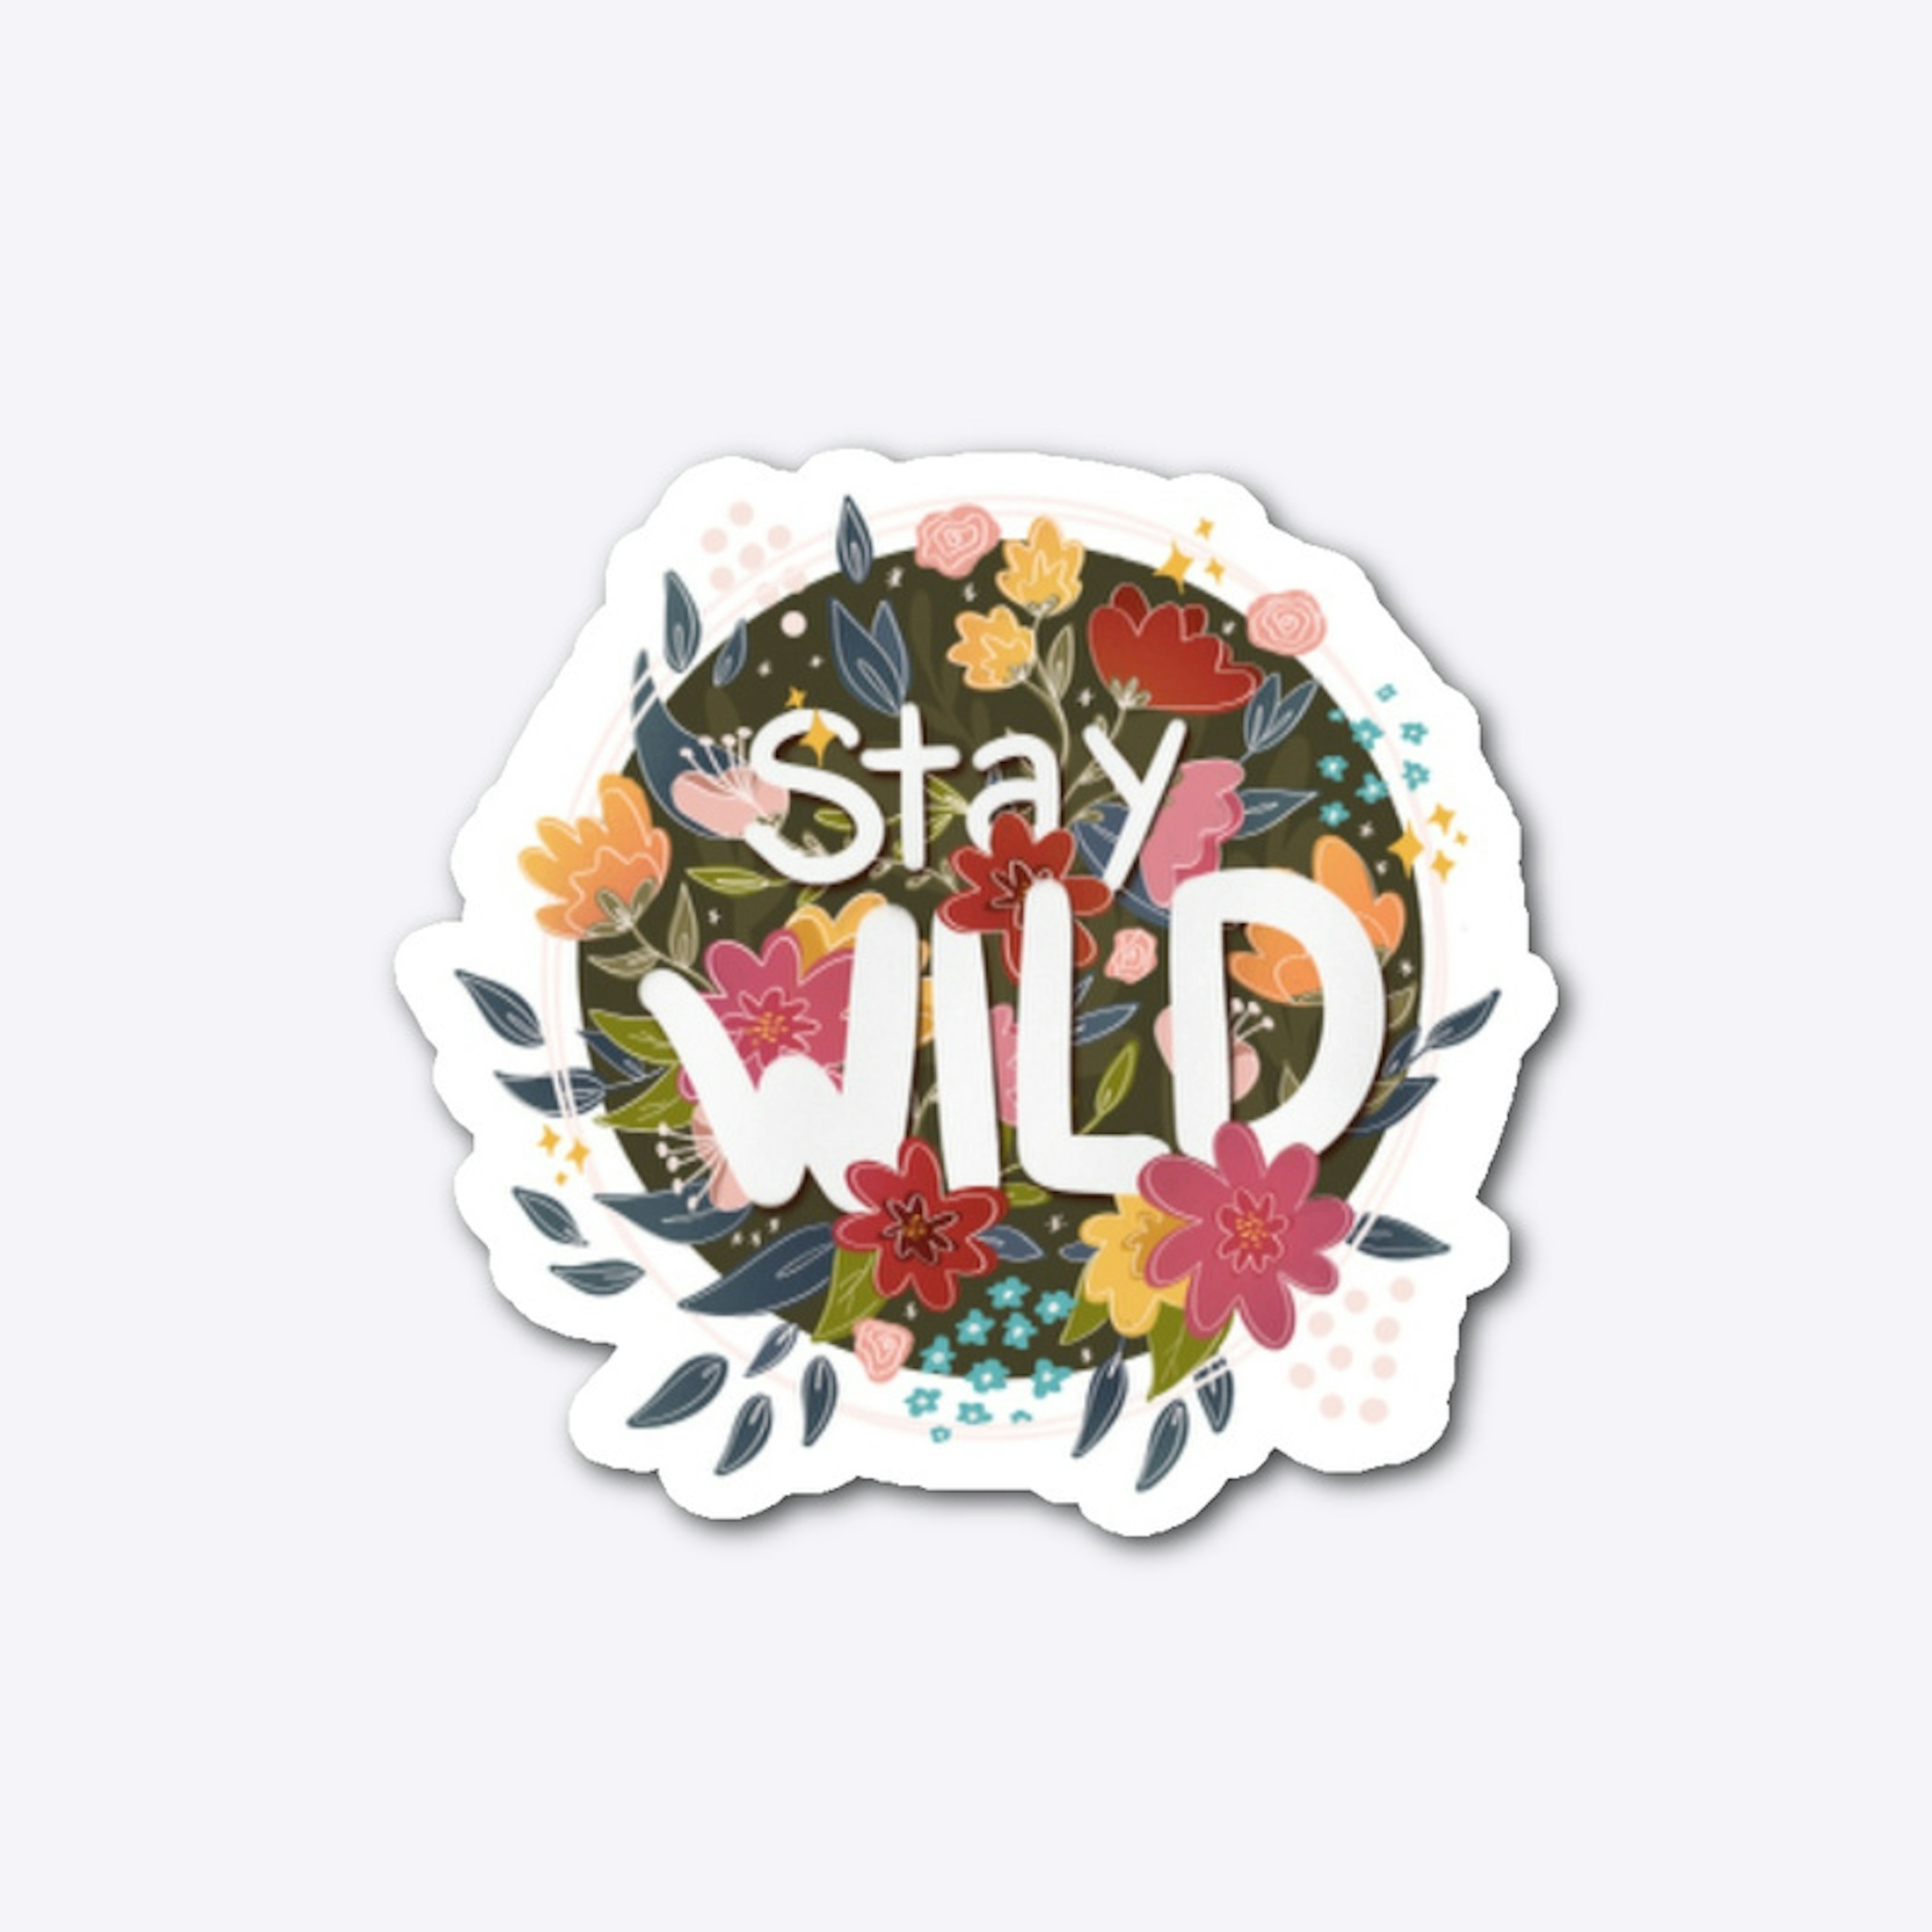 Stay wild child sticker